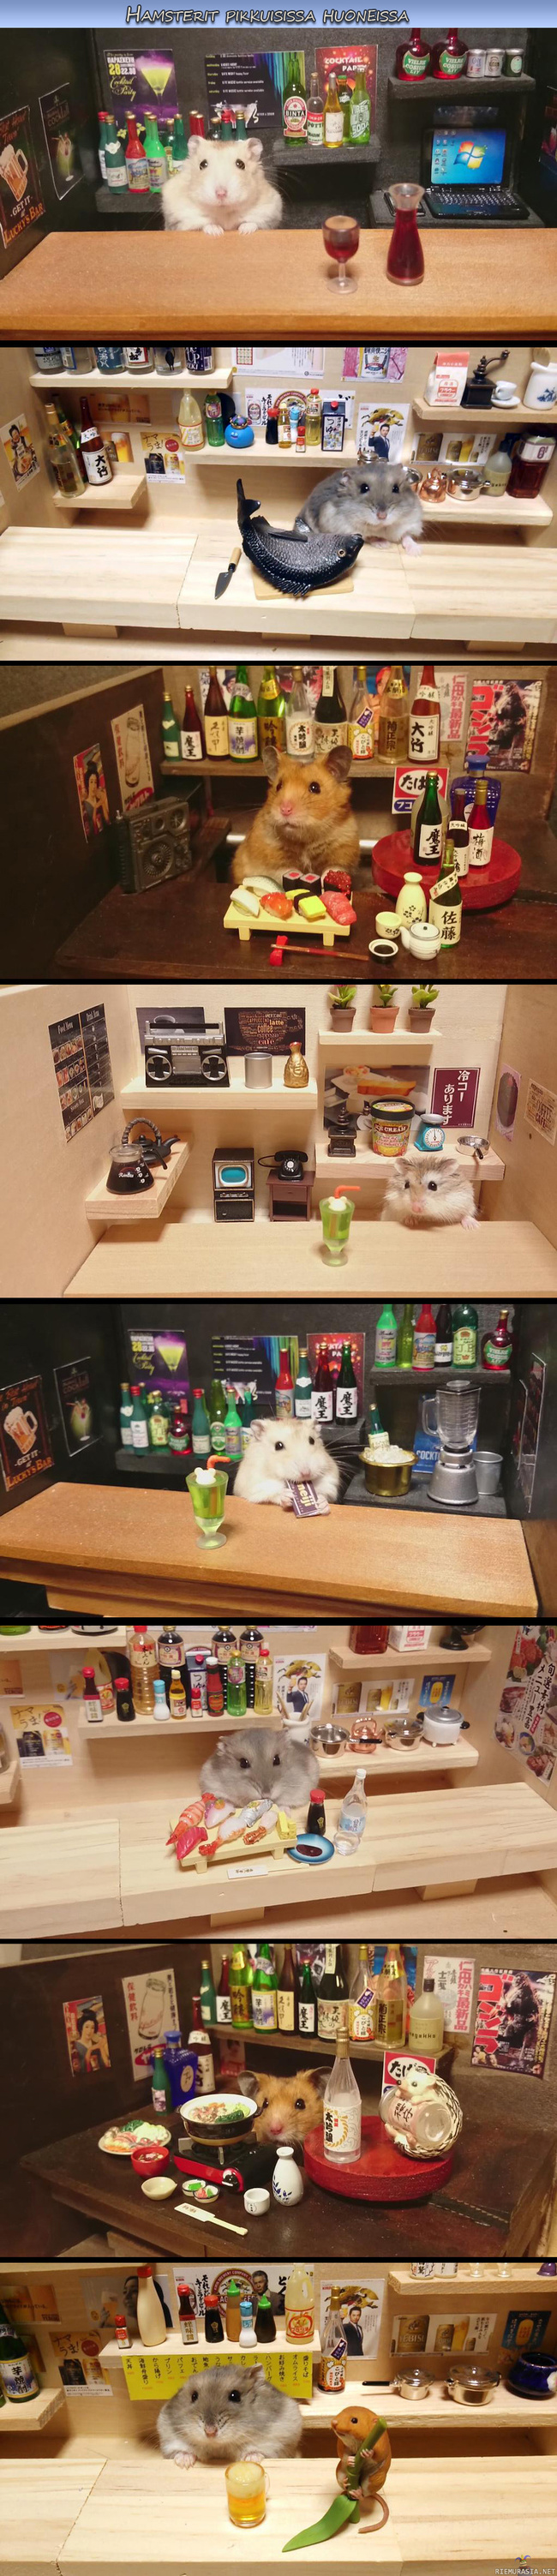 Hamsterit pikkuisissa huoneissa - Hamsterit poseeraamassa hienoissa puitteissa